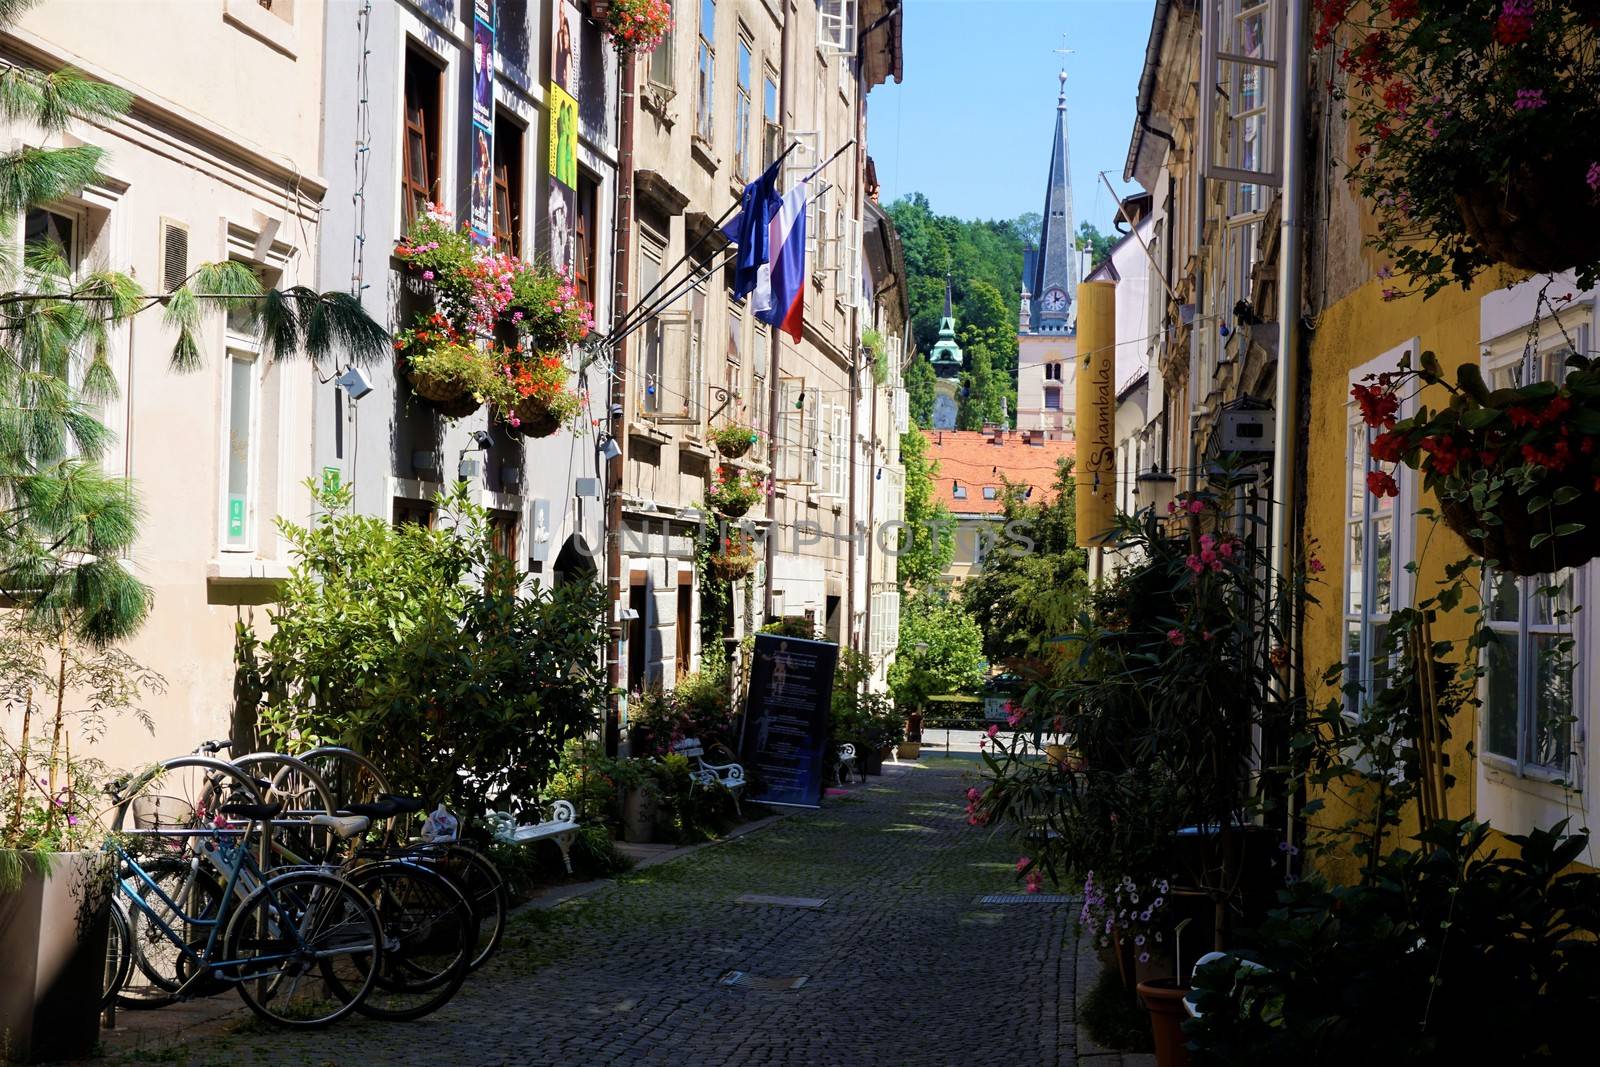 Beautiful Krizevniska ulica in the city center of Ljubljana, Slovenia